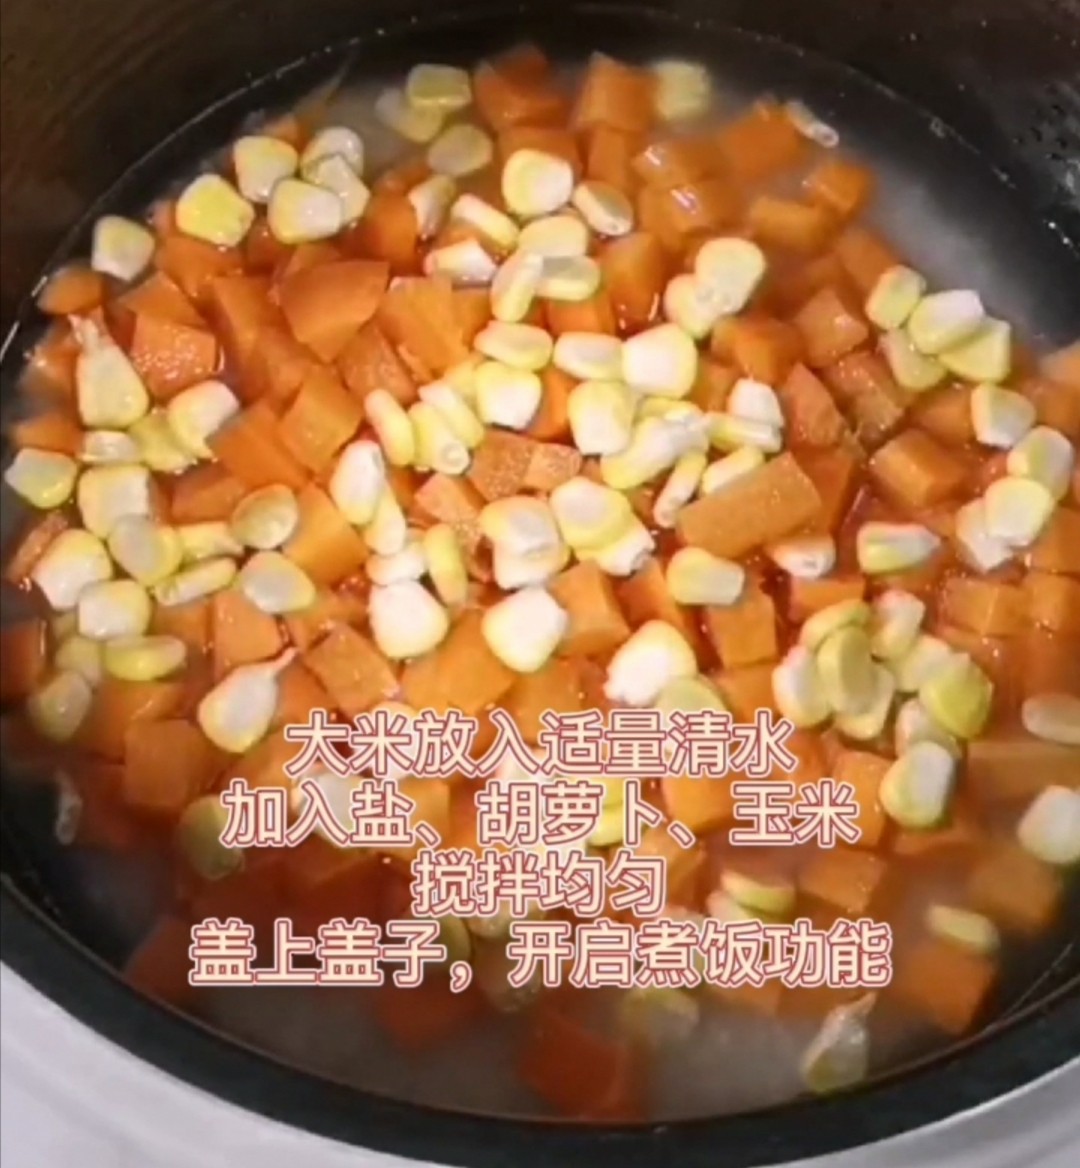 Kuaishou Cheese Braised Rice recipe